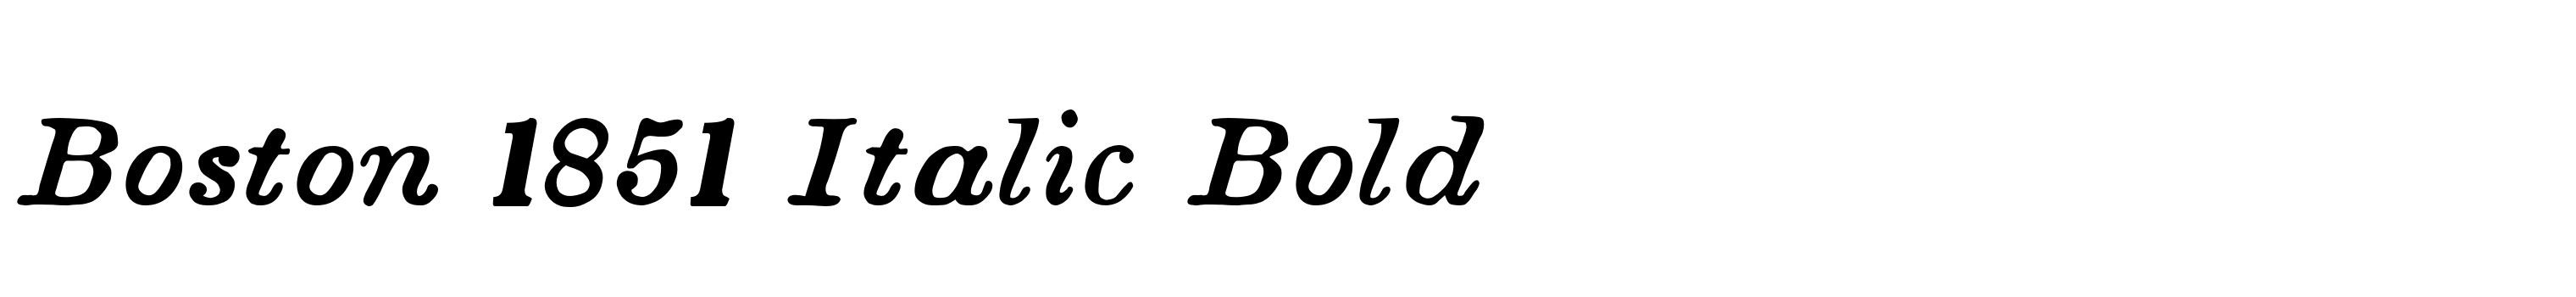 Boston 1851 Italic Bold